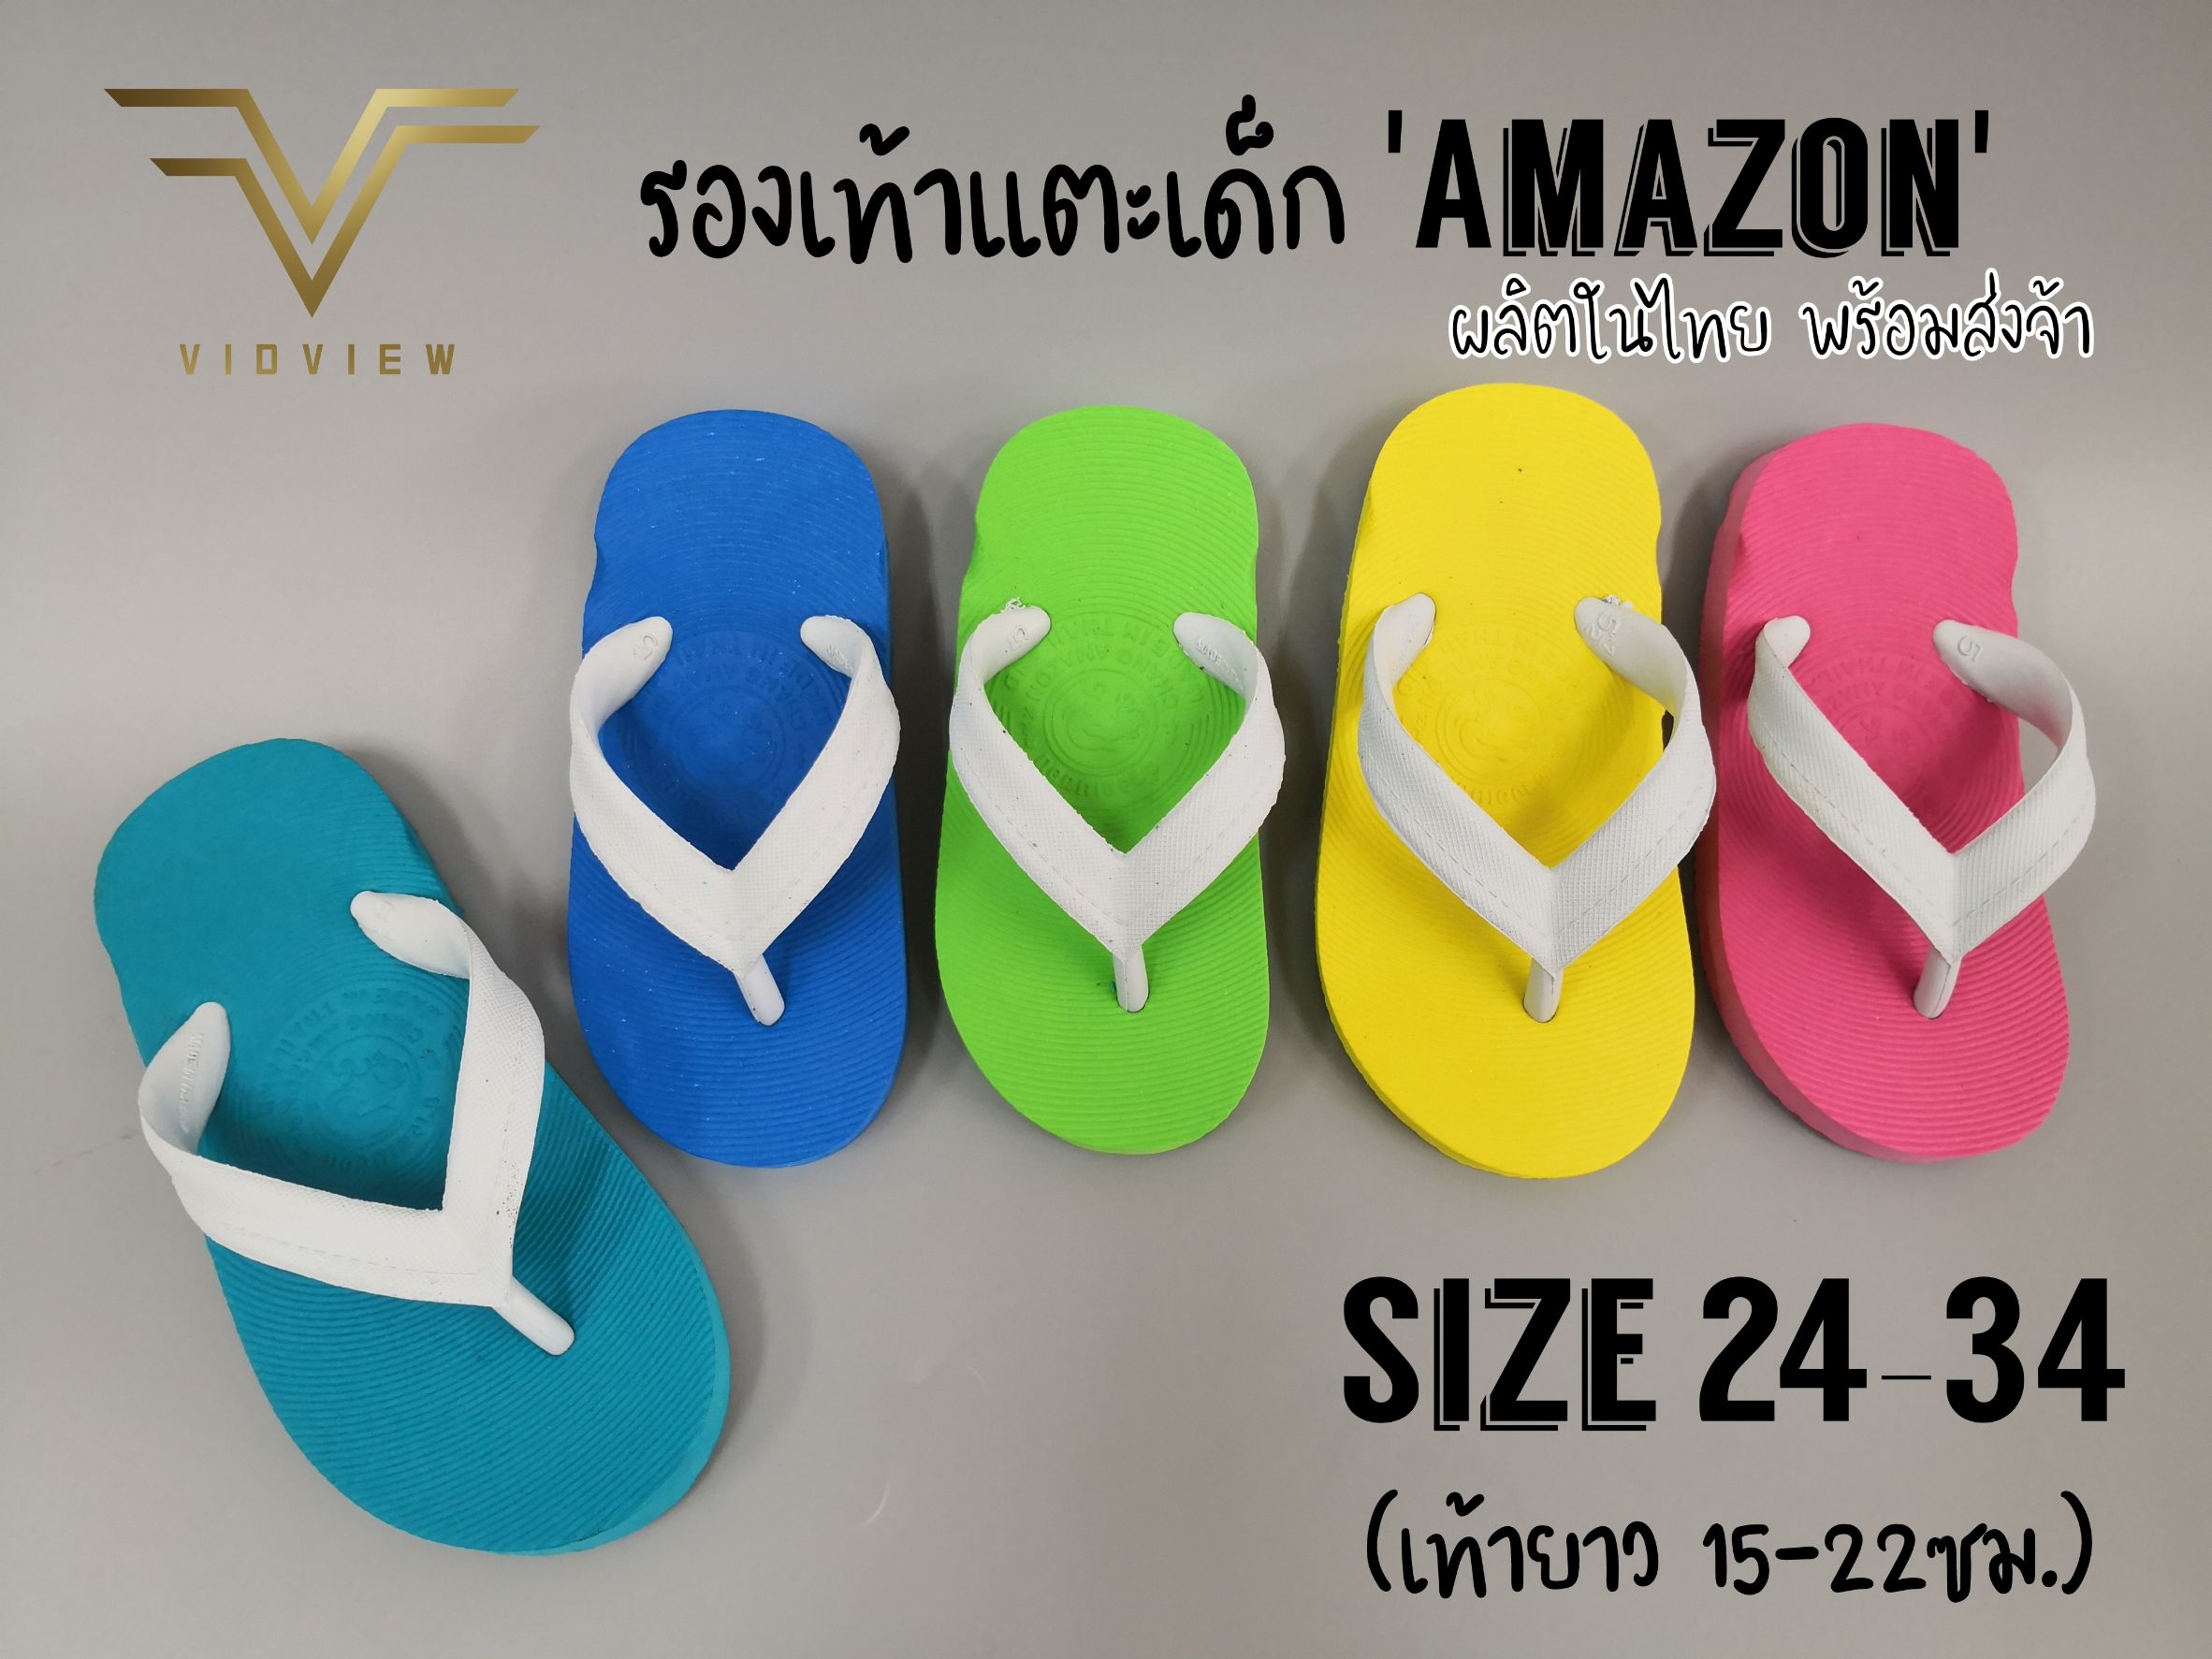 VIDVIEW !!ถูกมาก!! รองเท้าแตะหนีบเด็ก Amazon พื้นขาว นิ่ม ใส่สบาย ทนทาน ไซส์ 5-8.5 รองเท้าเด็ก